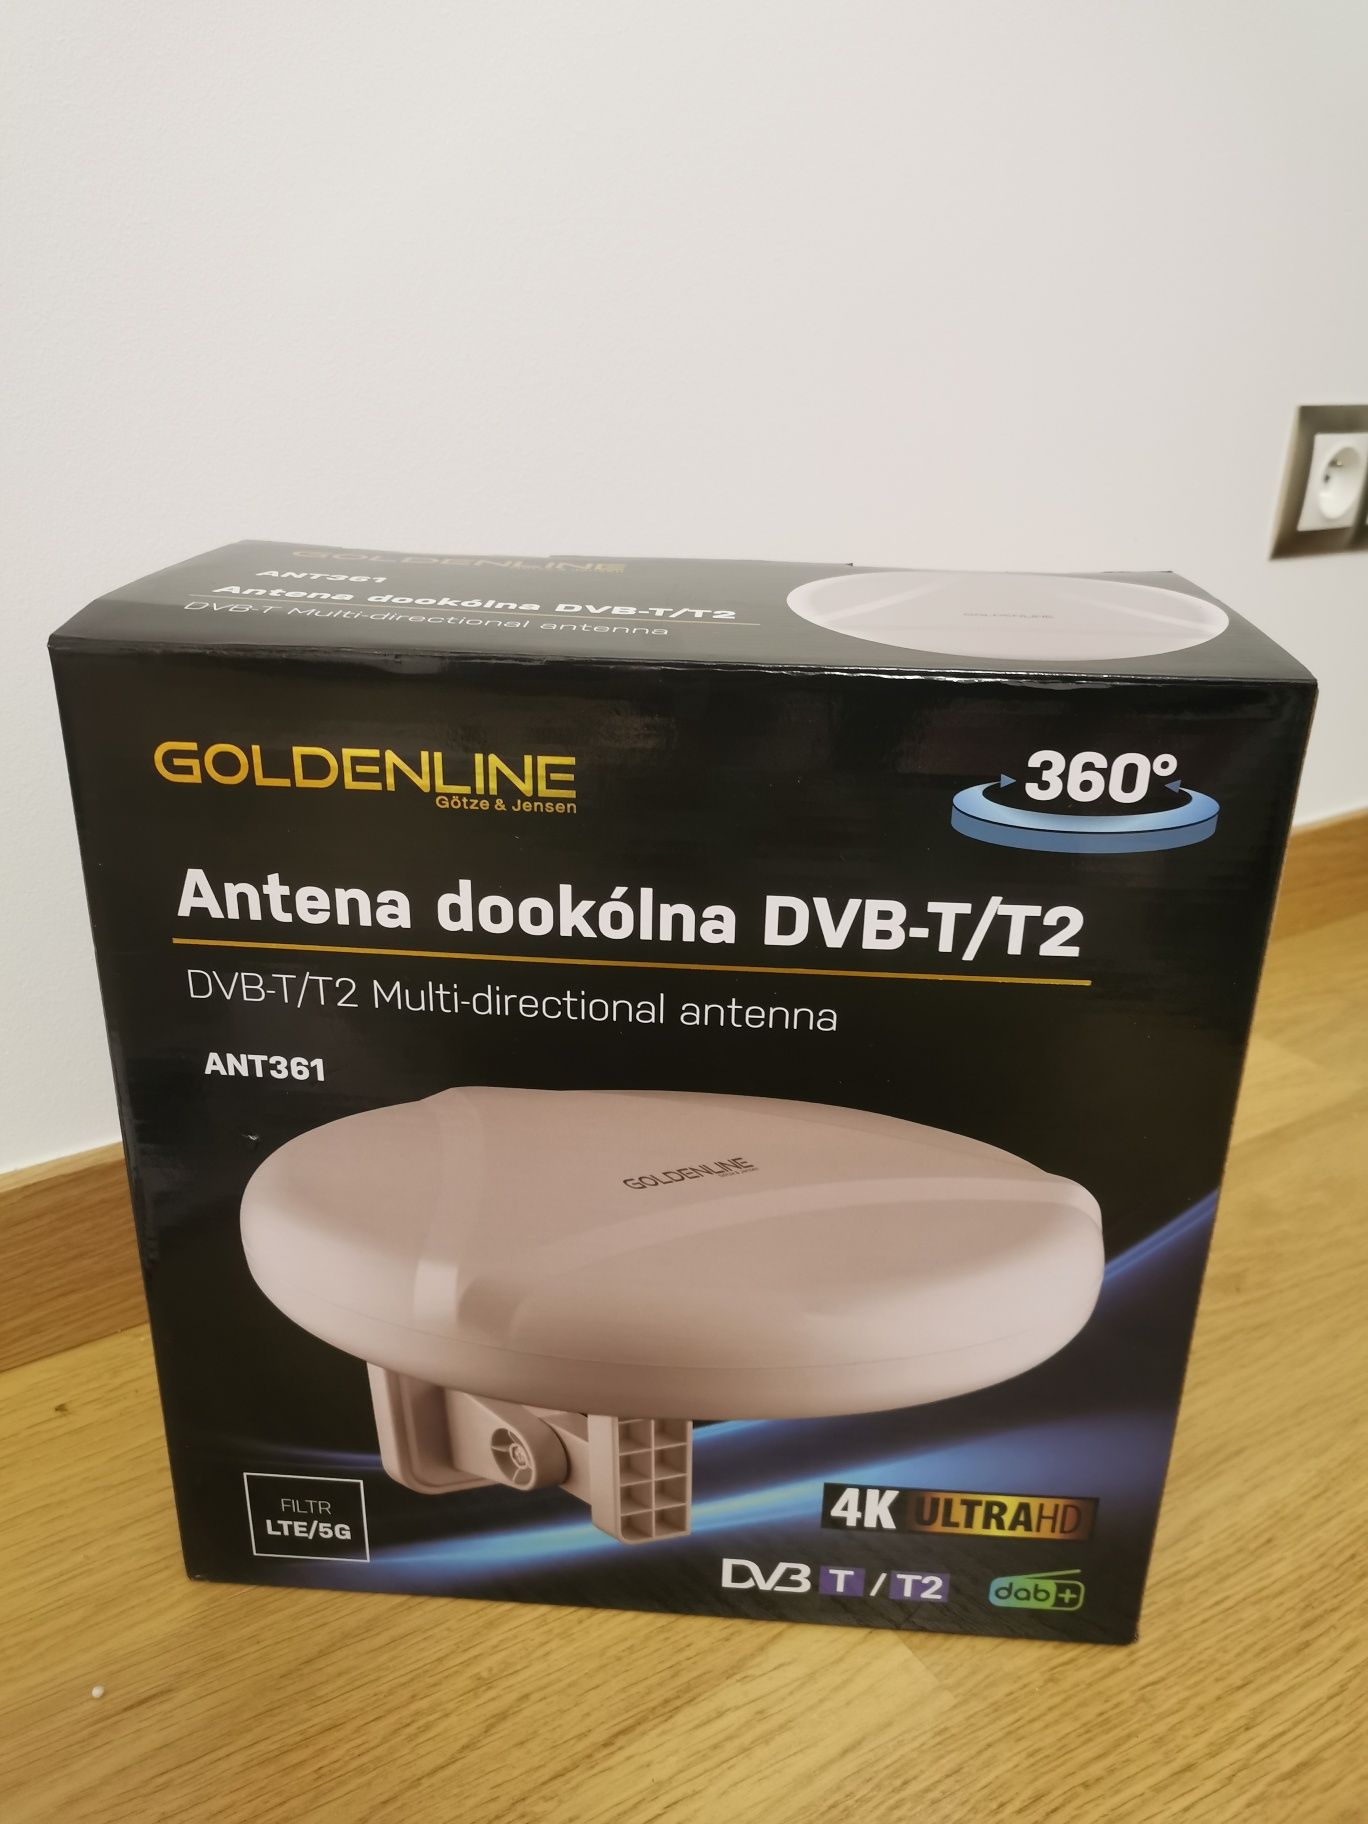 Antena dookólna DVB-T/T2